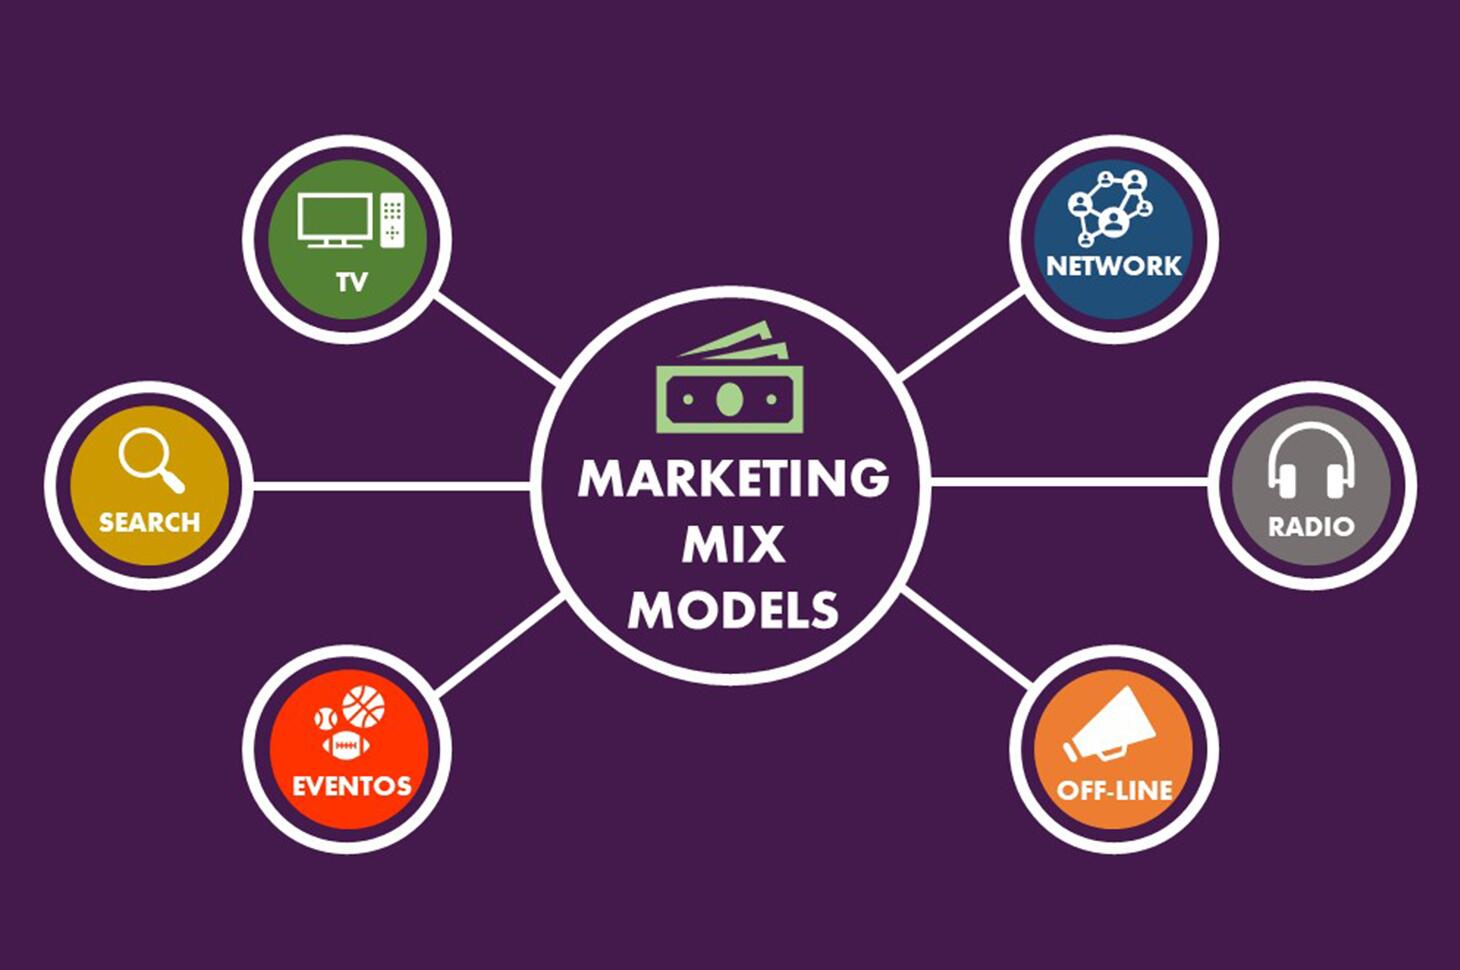 curso marketing mix model